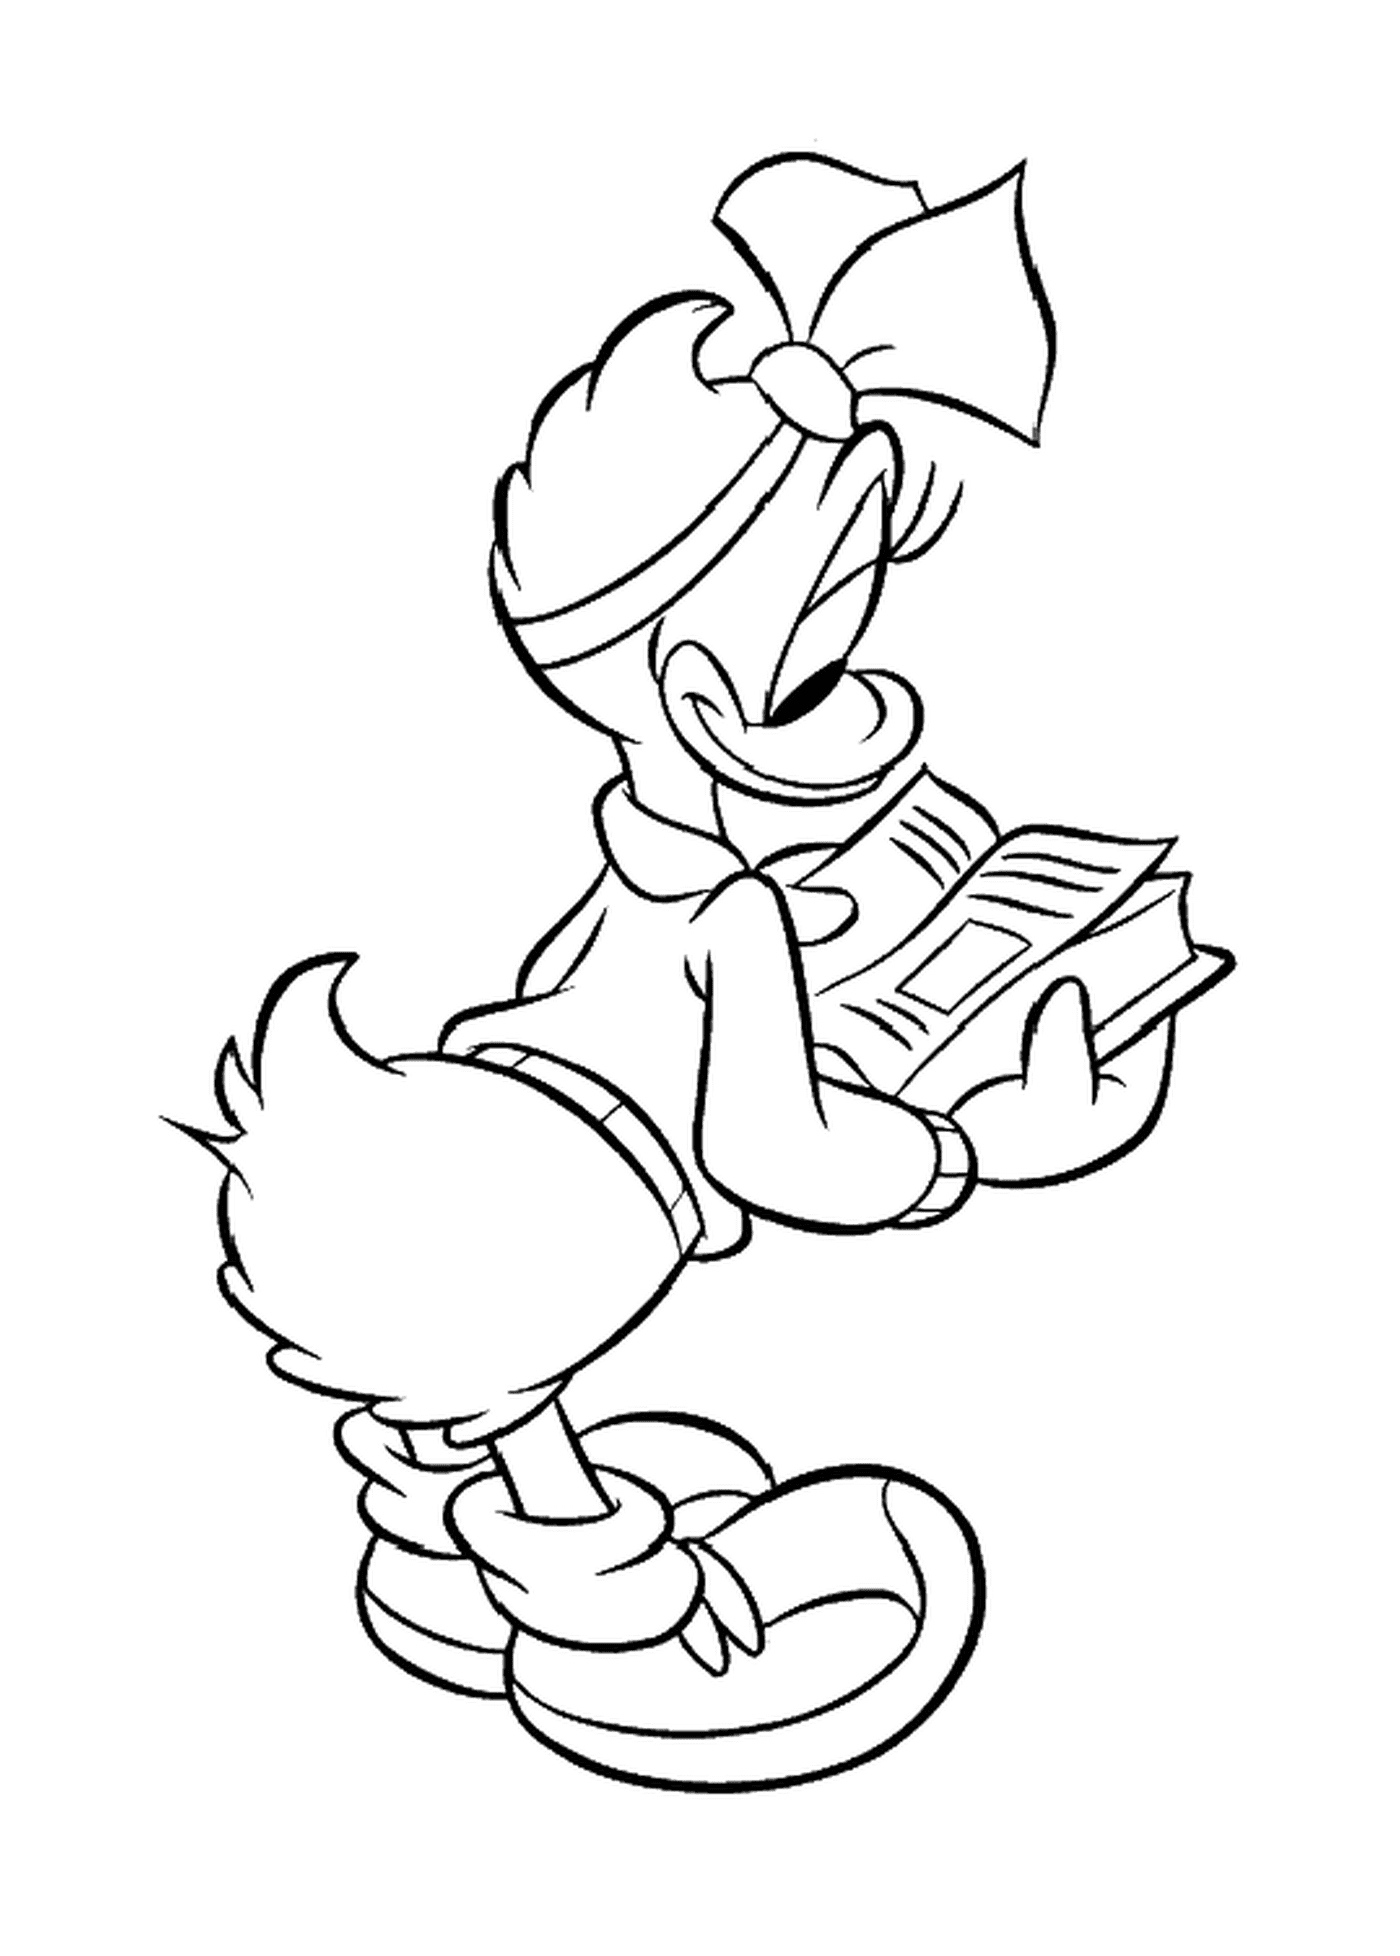  Daisy lee un libro de Disney 